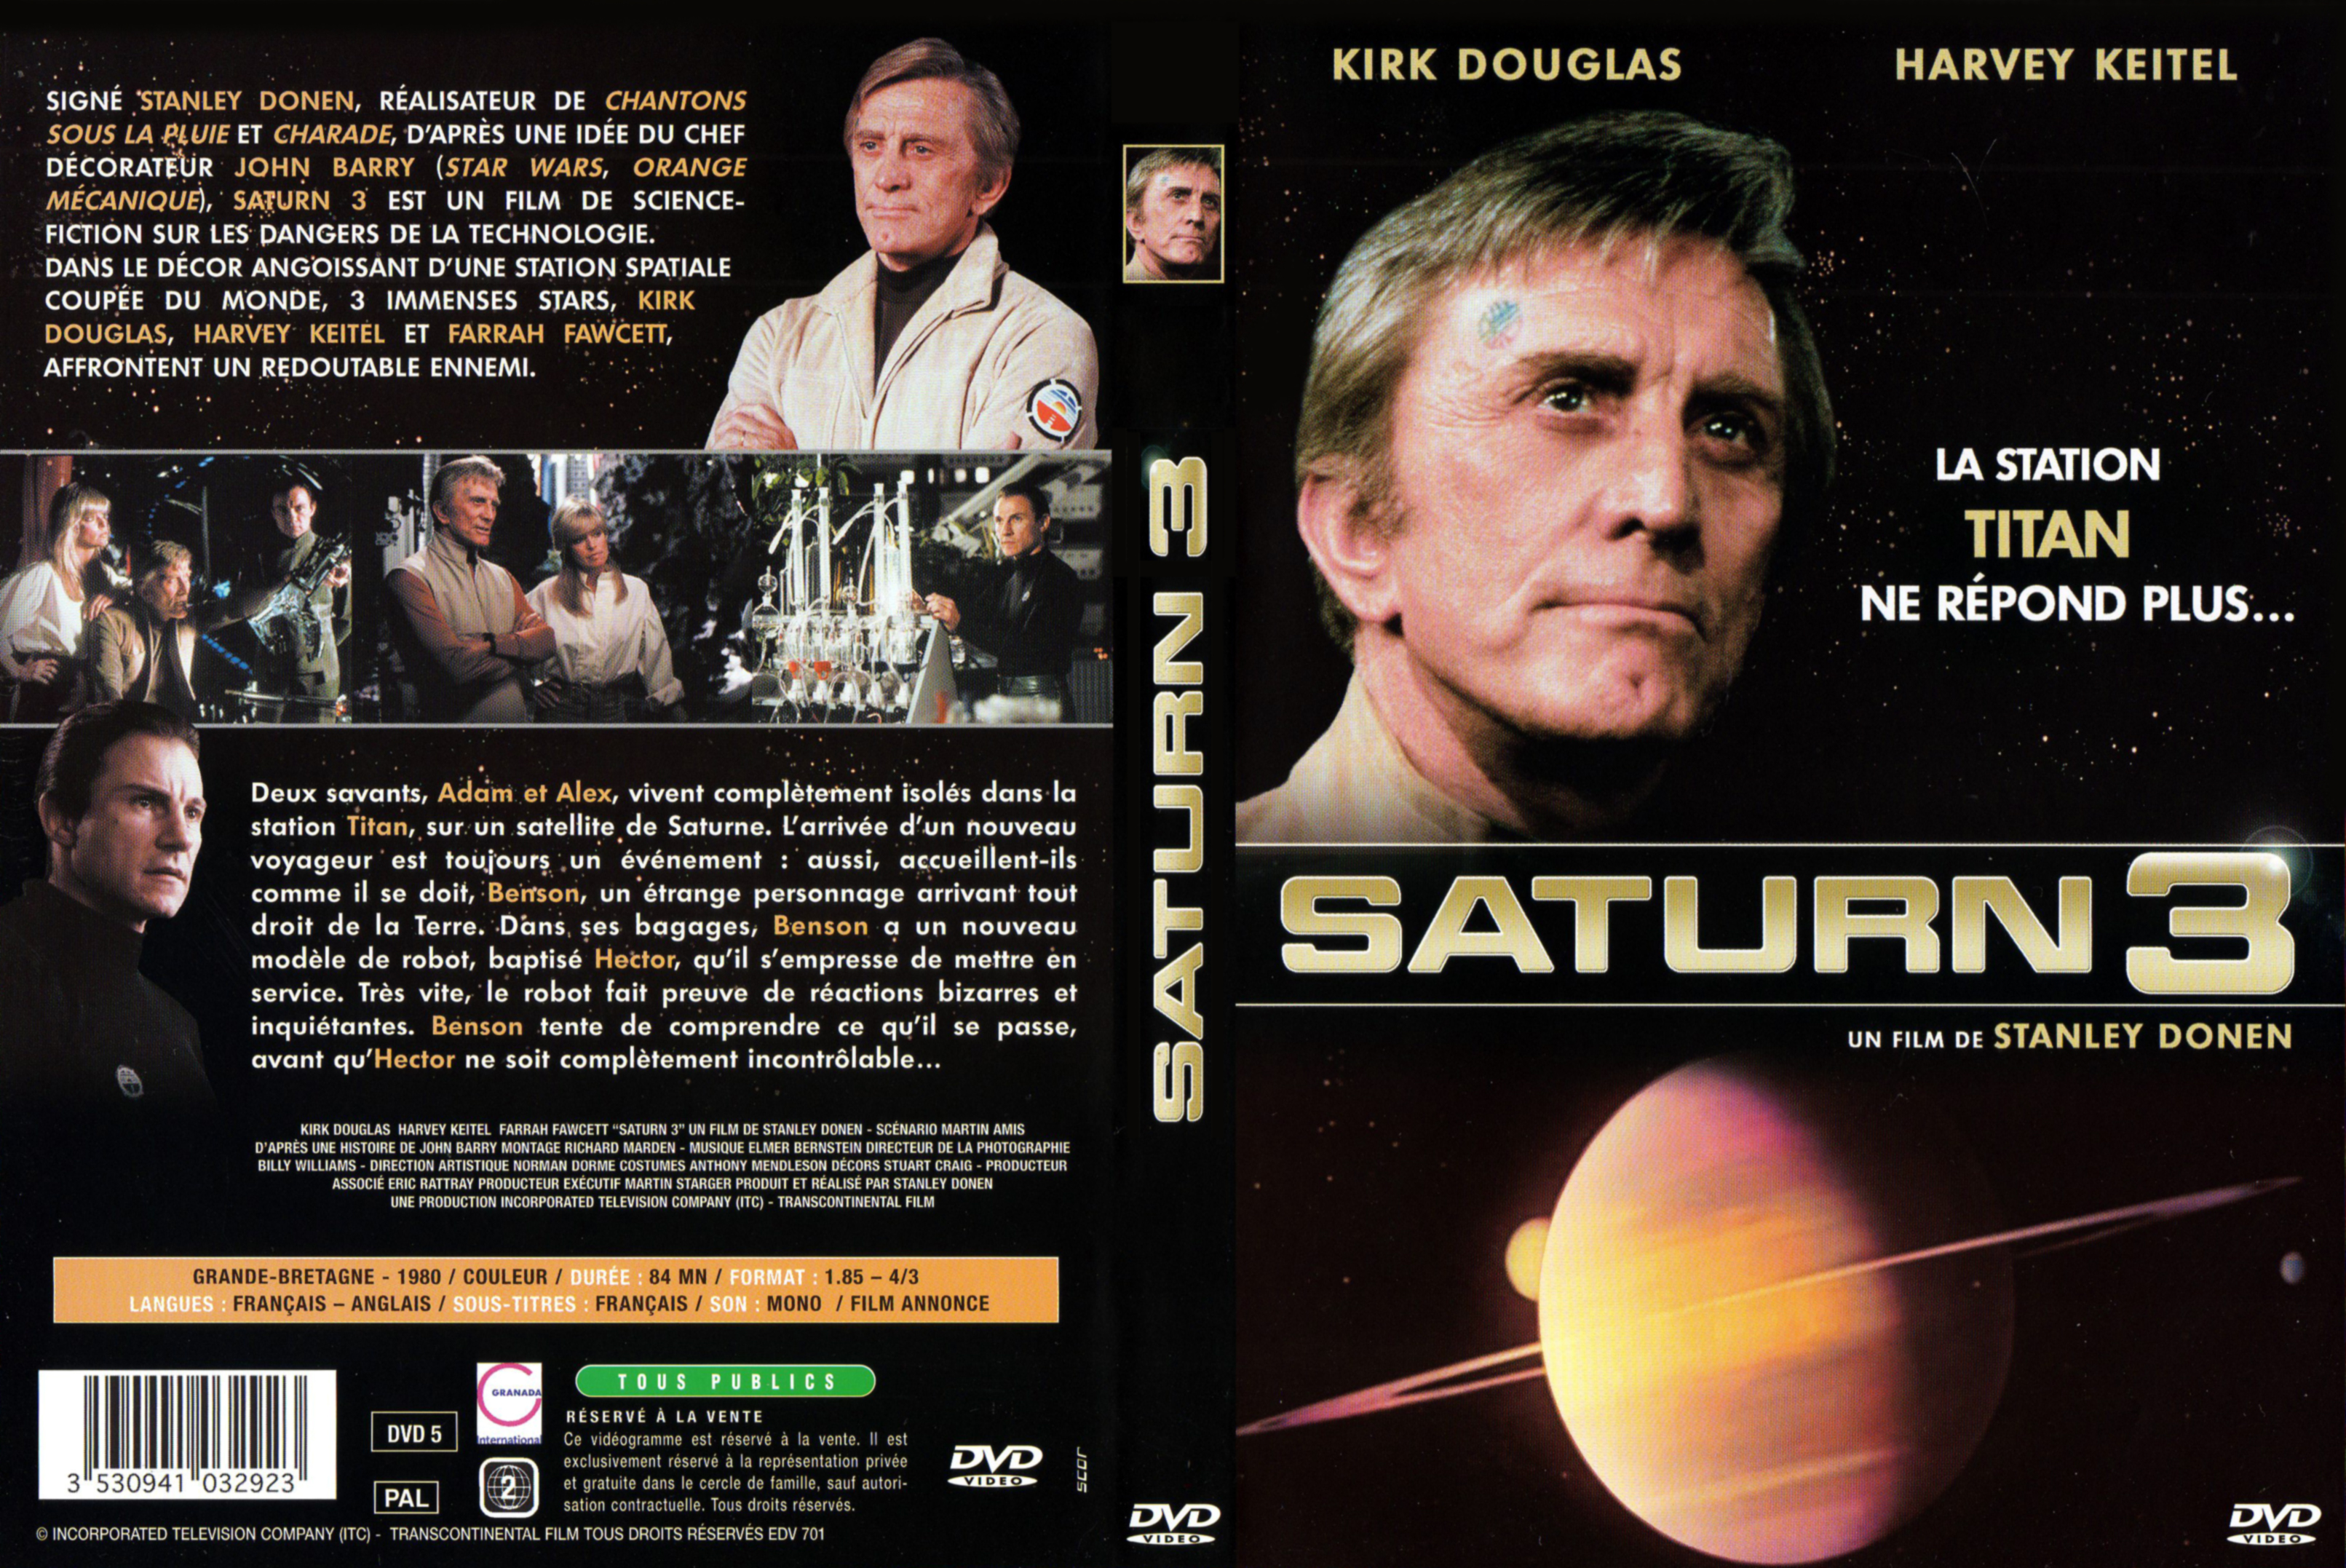 Jaquette DVD Saturne 3 v2